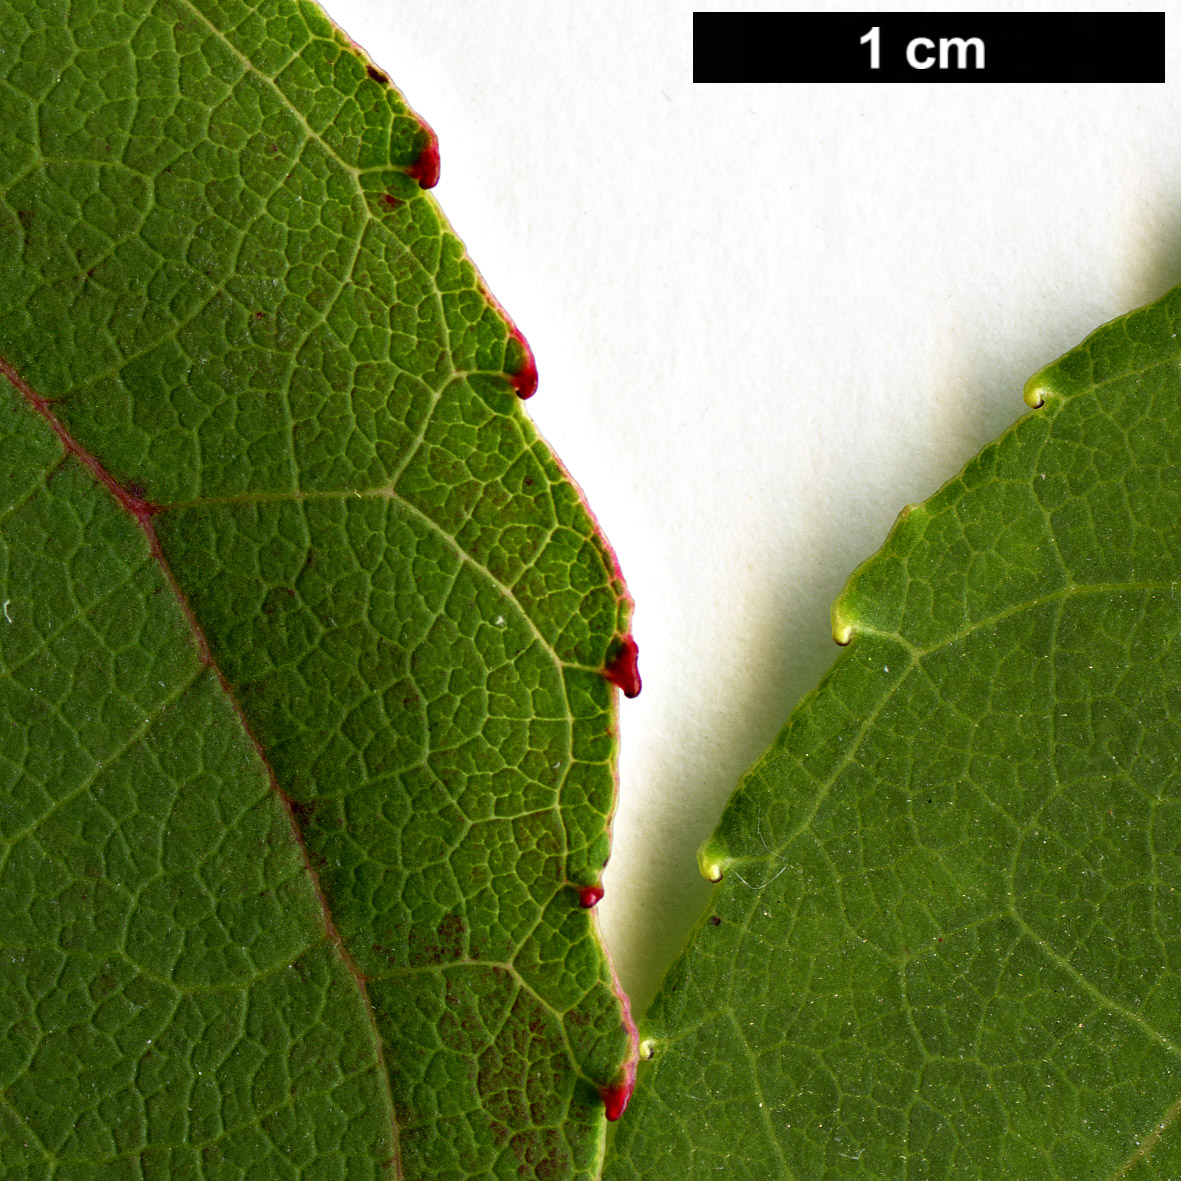 High resolution image: Family: Altingiaceae - Genus: Liquidambar - Taxon: formosana - SpeciesSub: Monticola Group